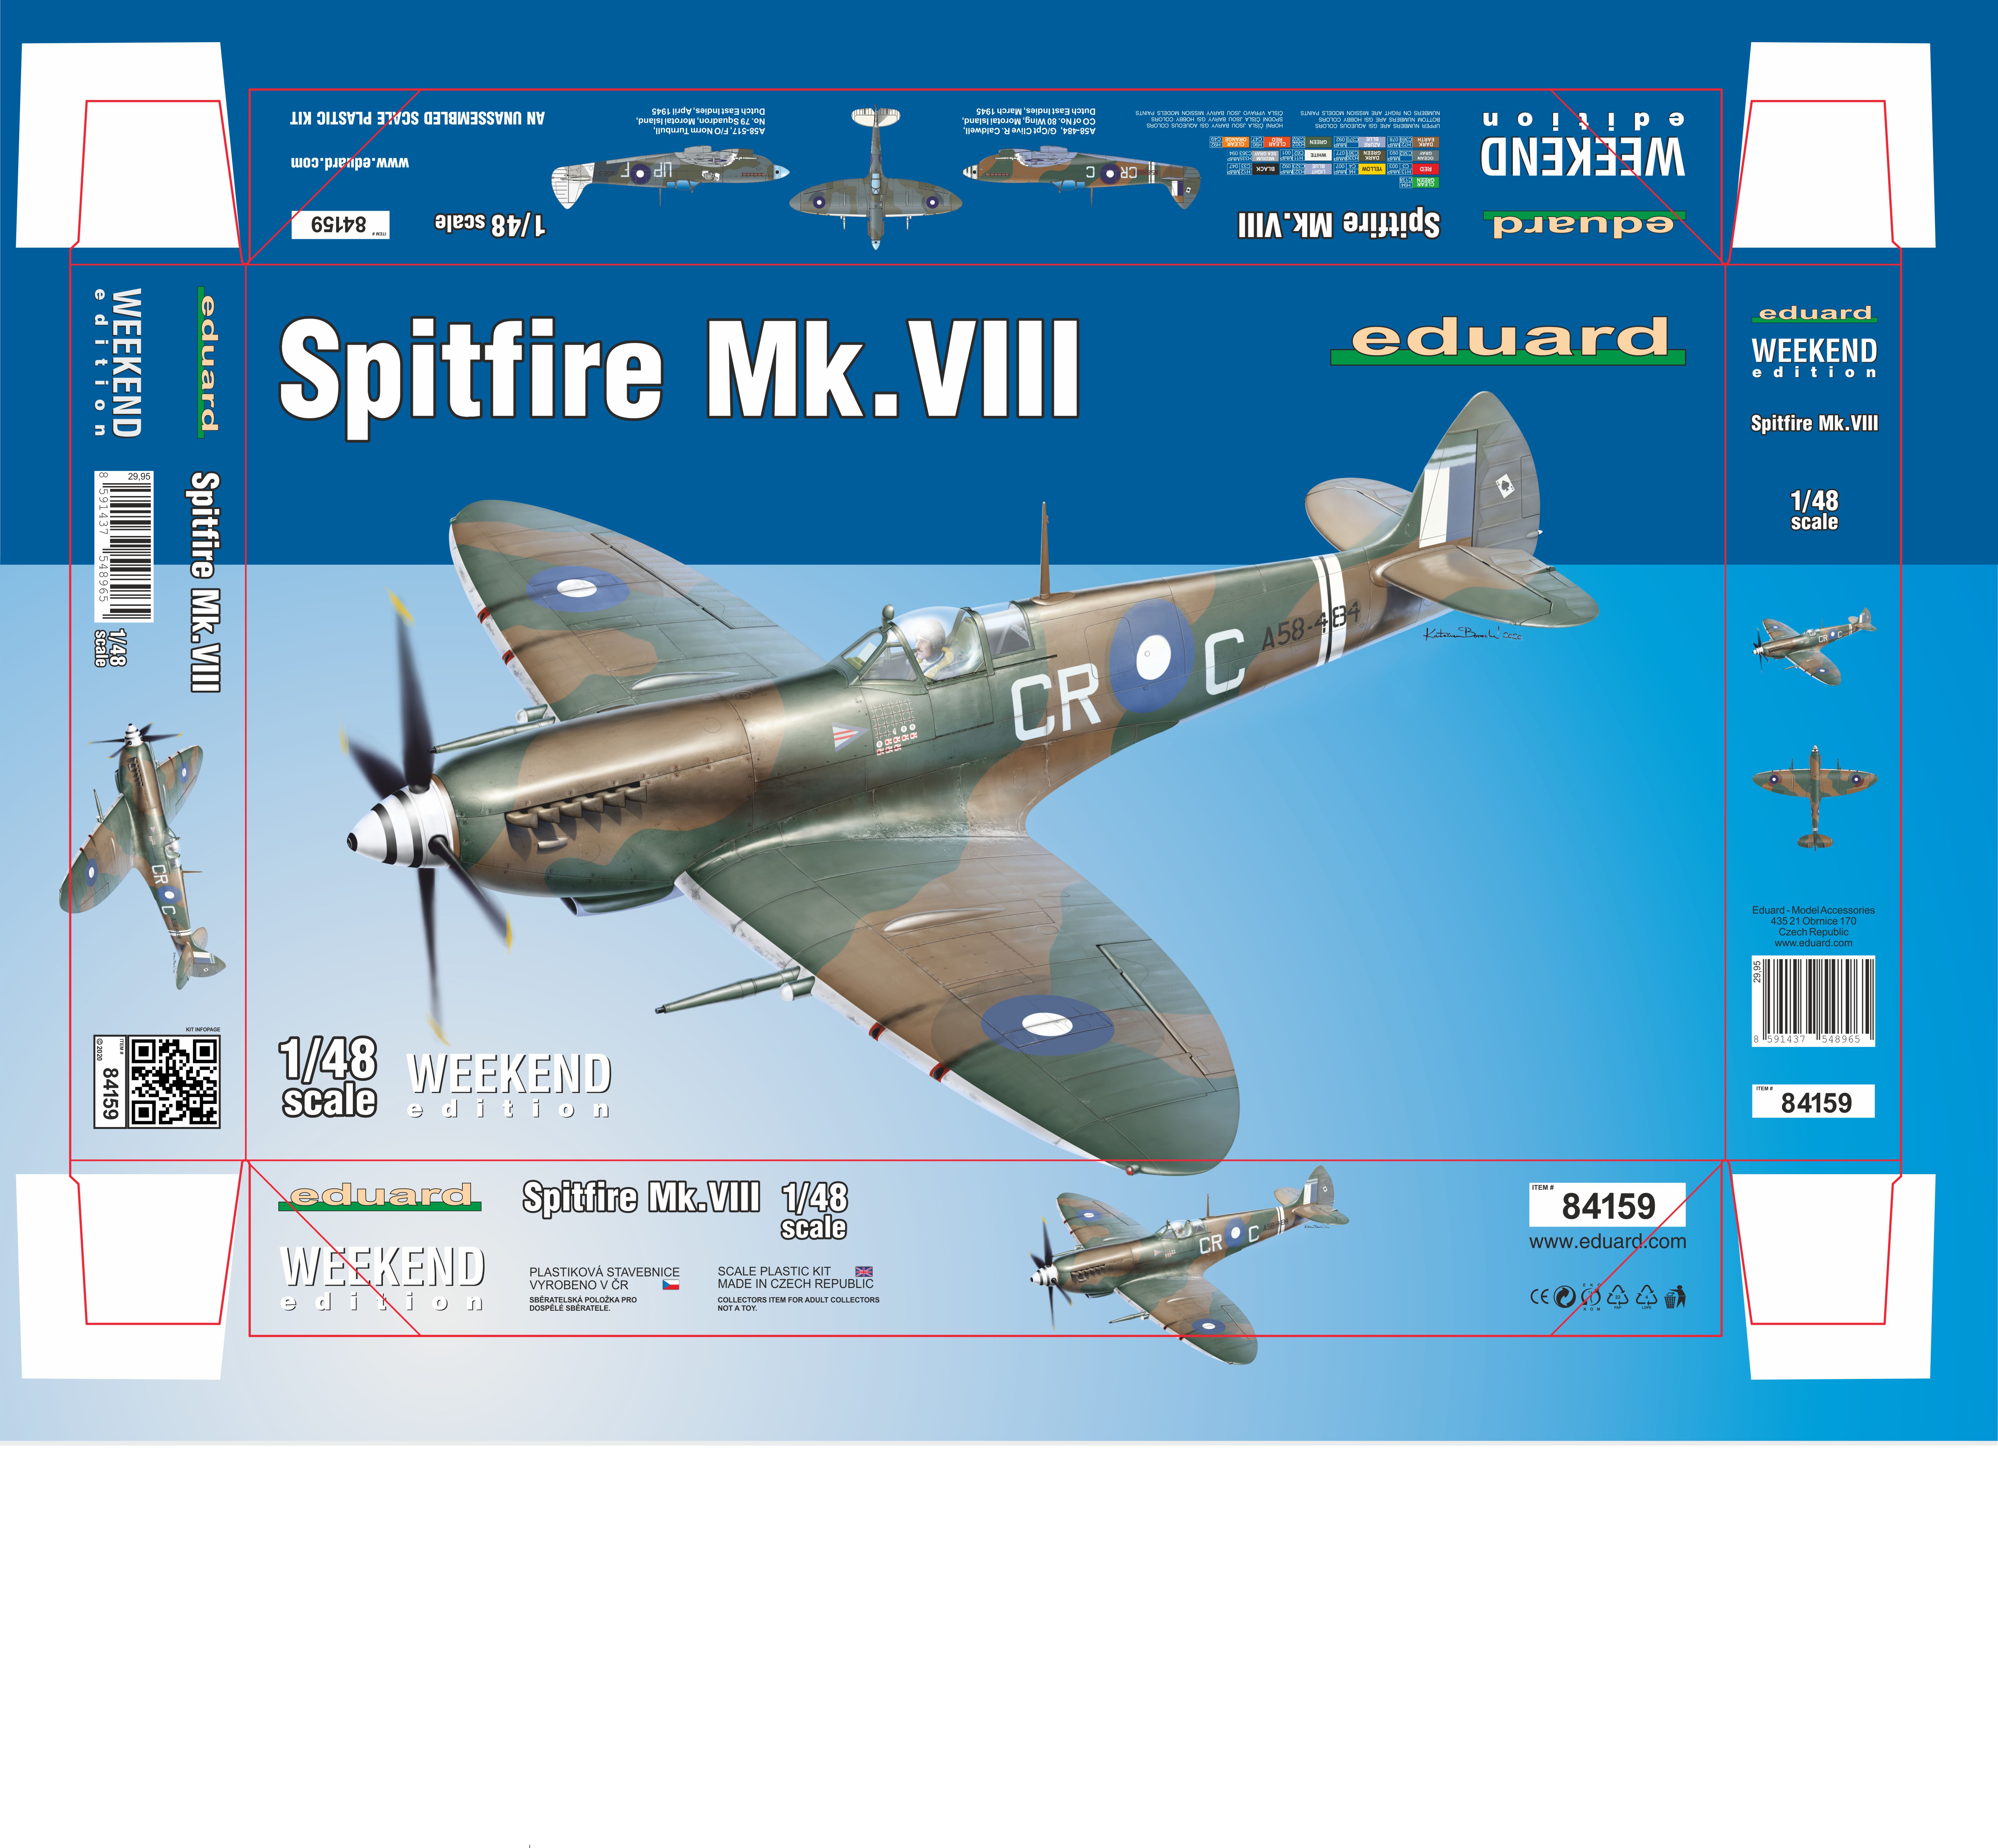 1/48 Spitfire Mk.VIII (Weekend edition)